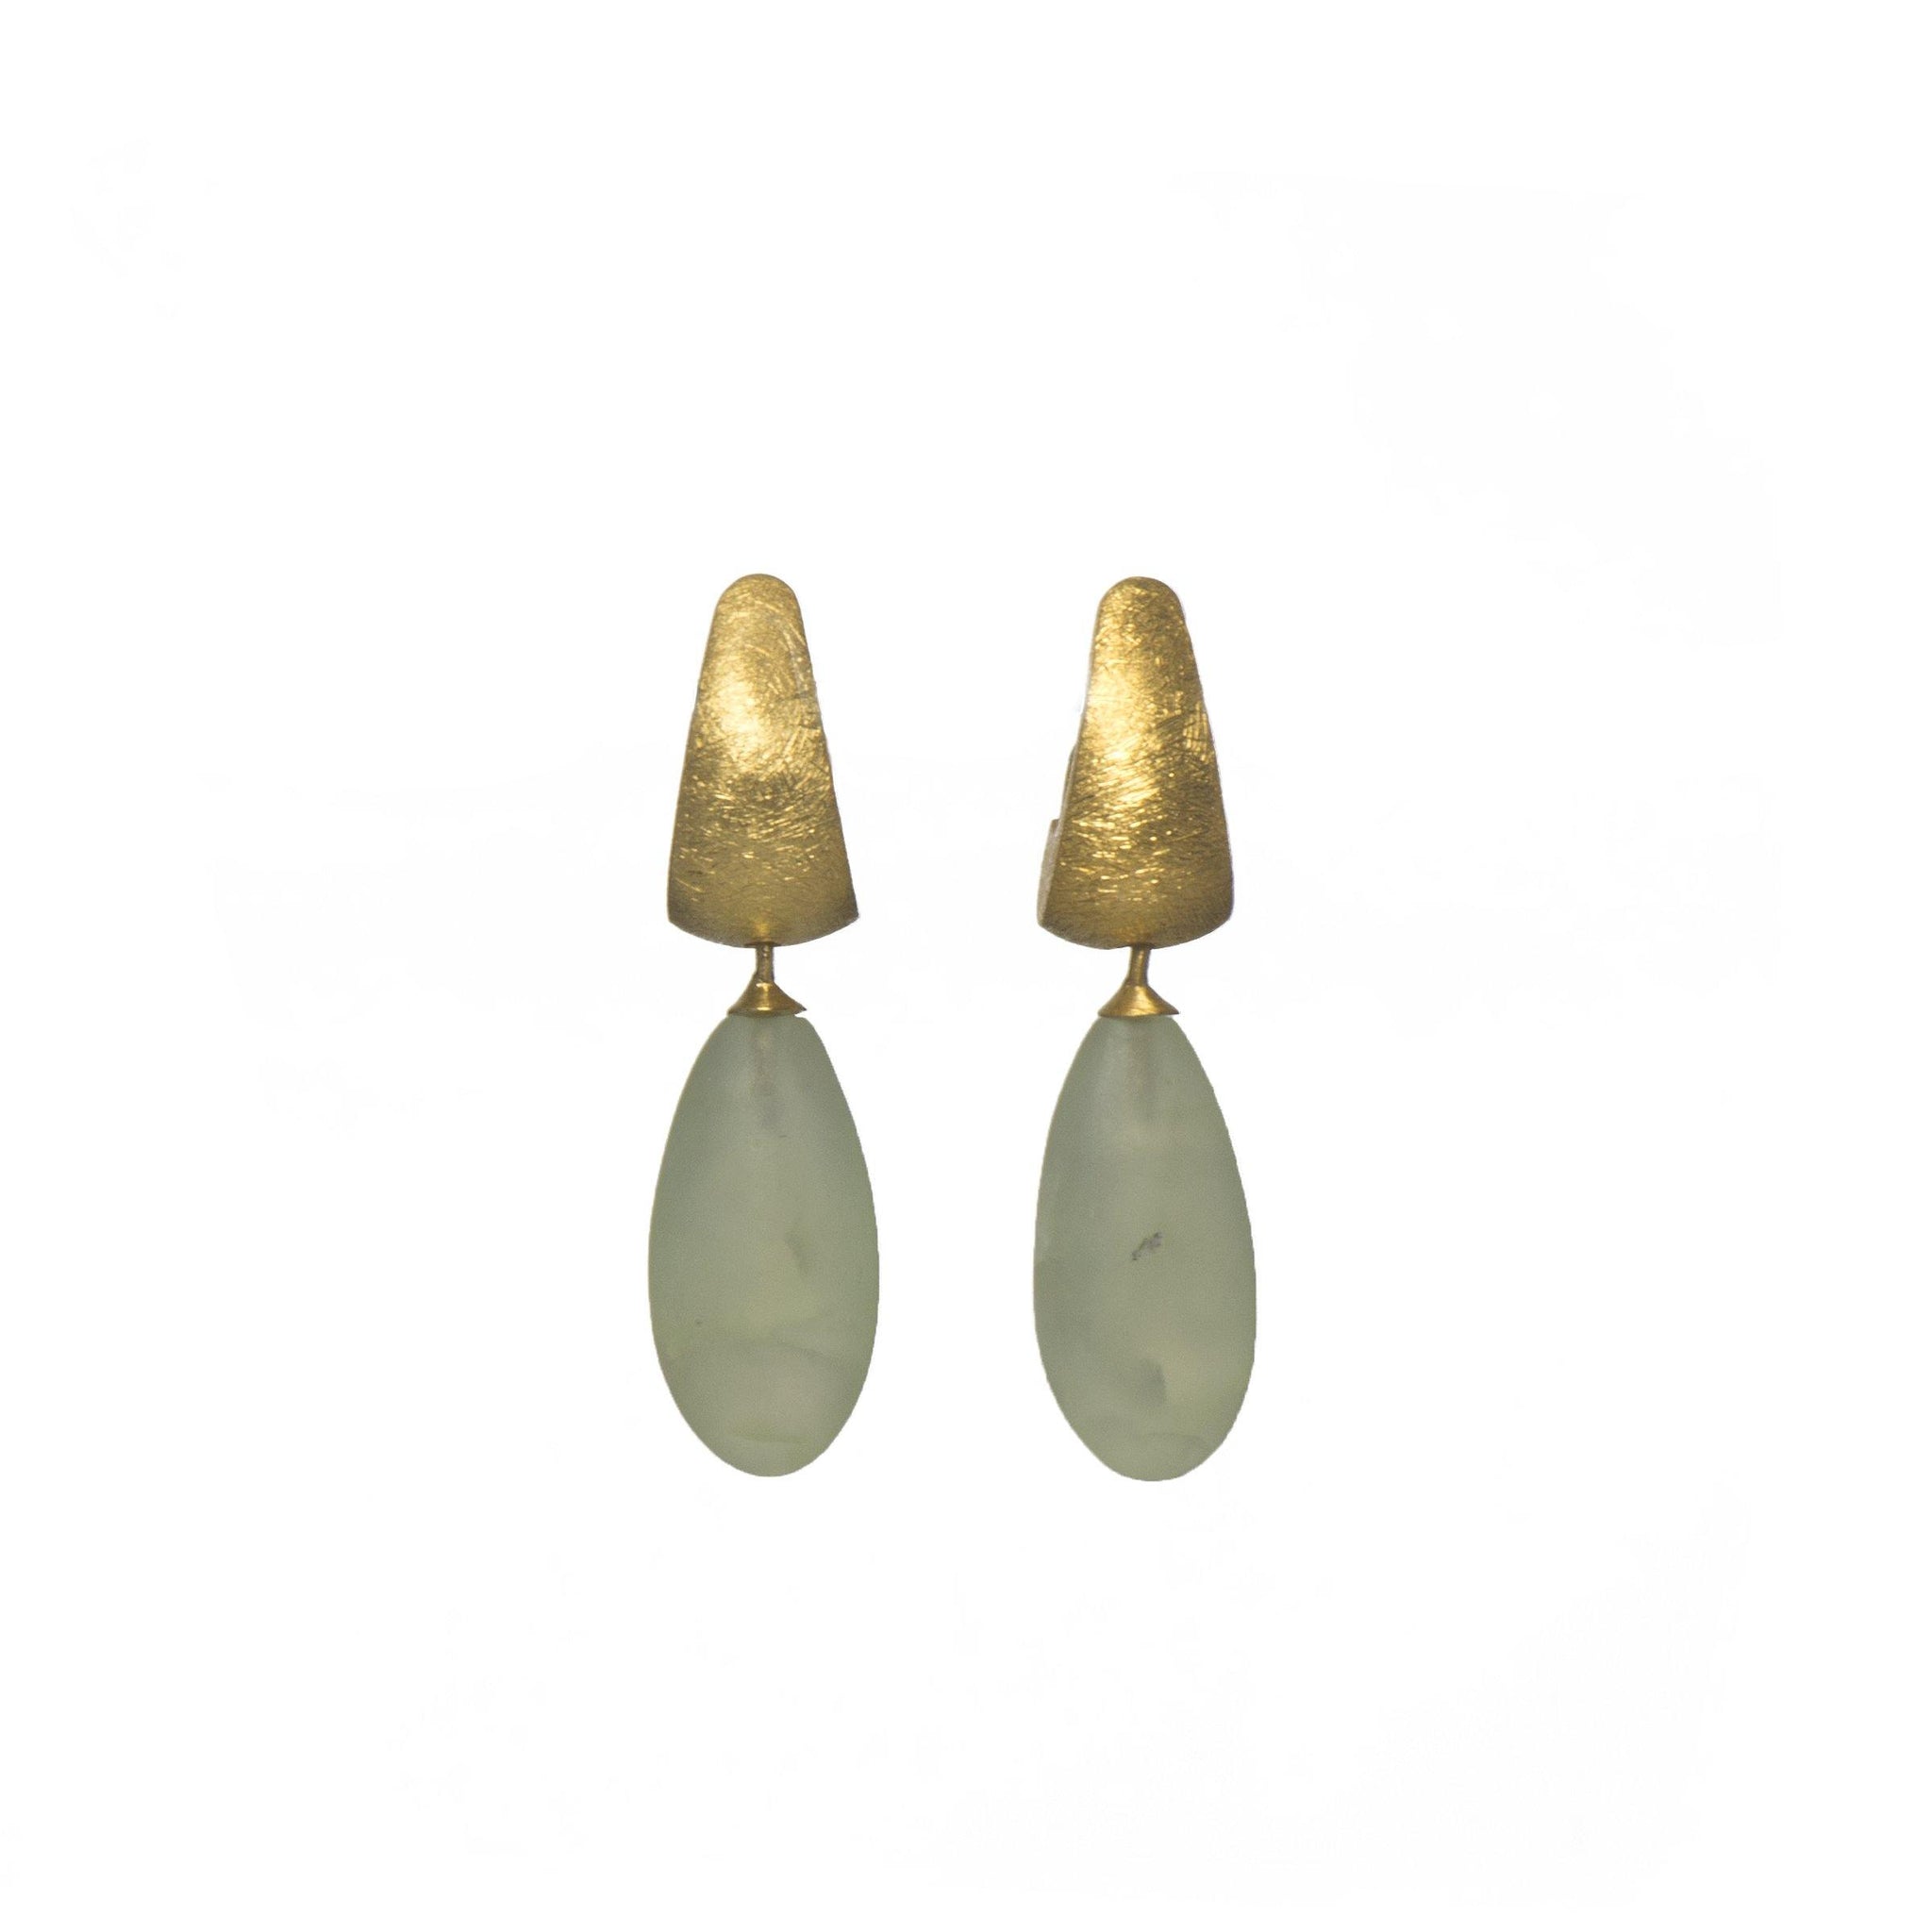 HUGGIE EARRINGS WITH A MATTE PREHNITE DROP FAIR TRADE 24K GOLD VERMEIL - Joyla Jewelry